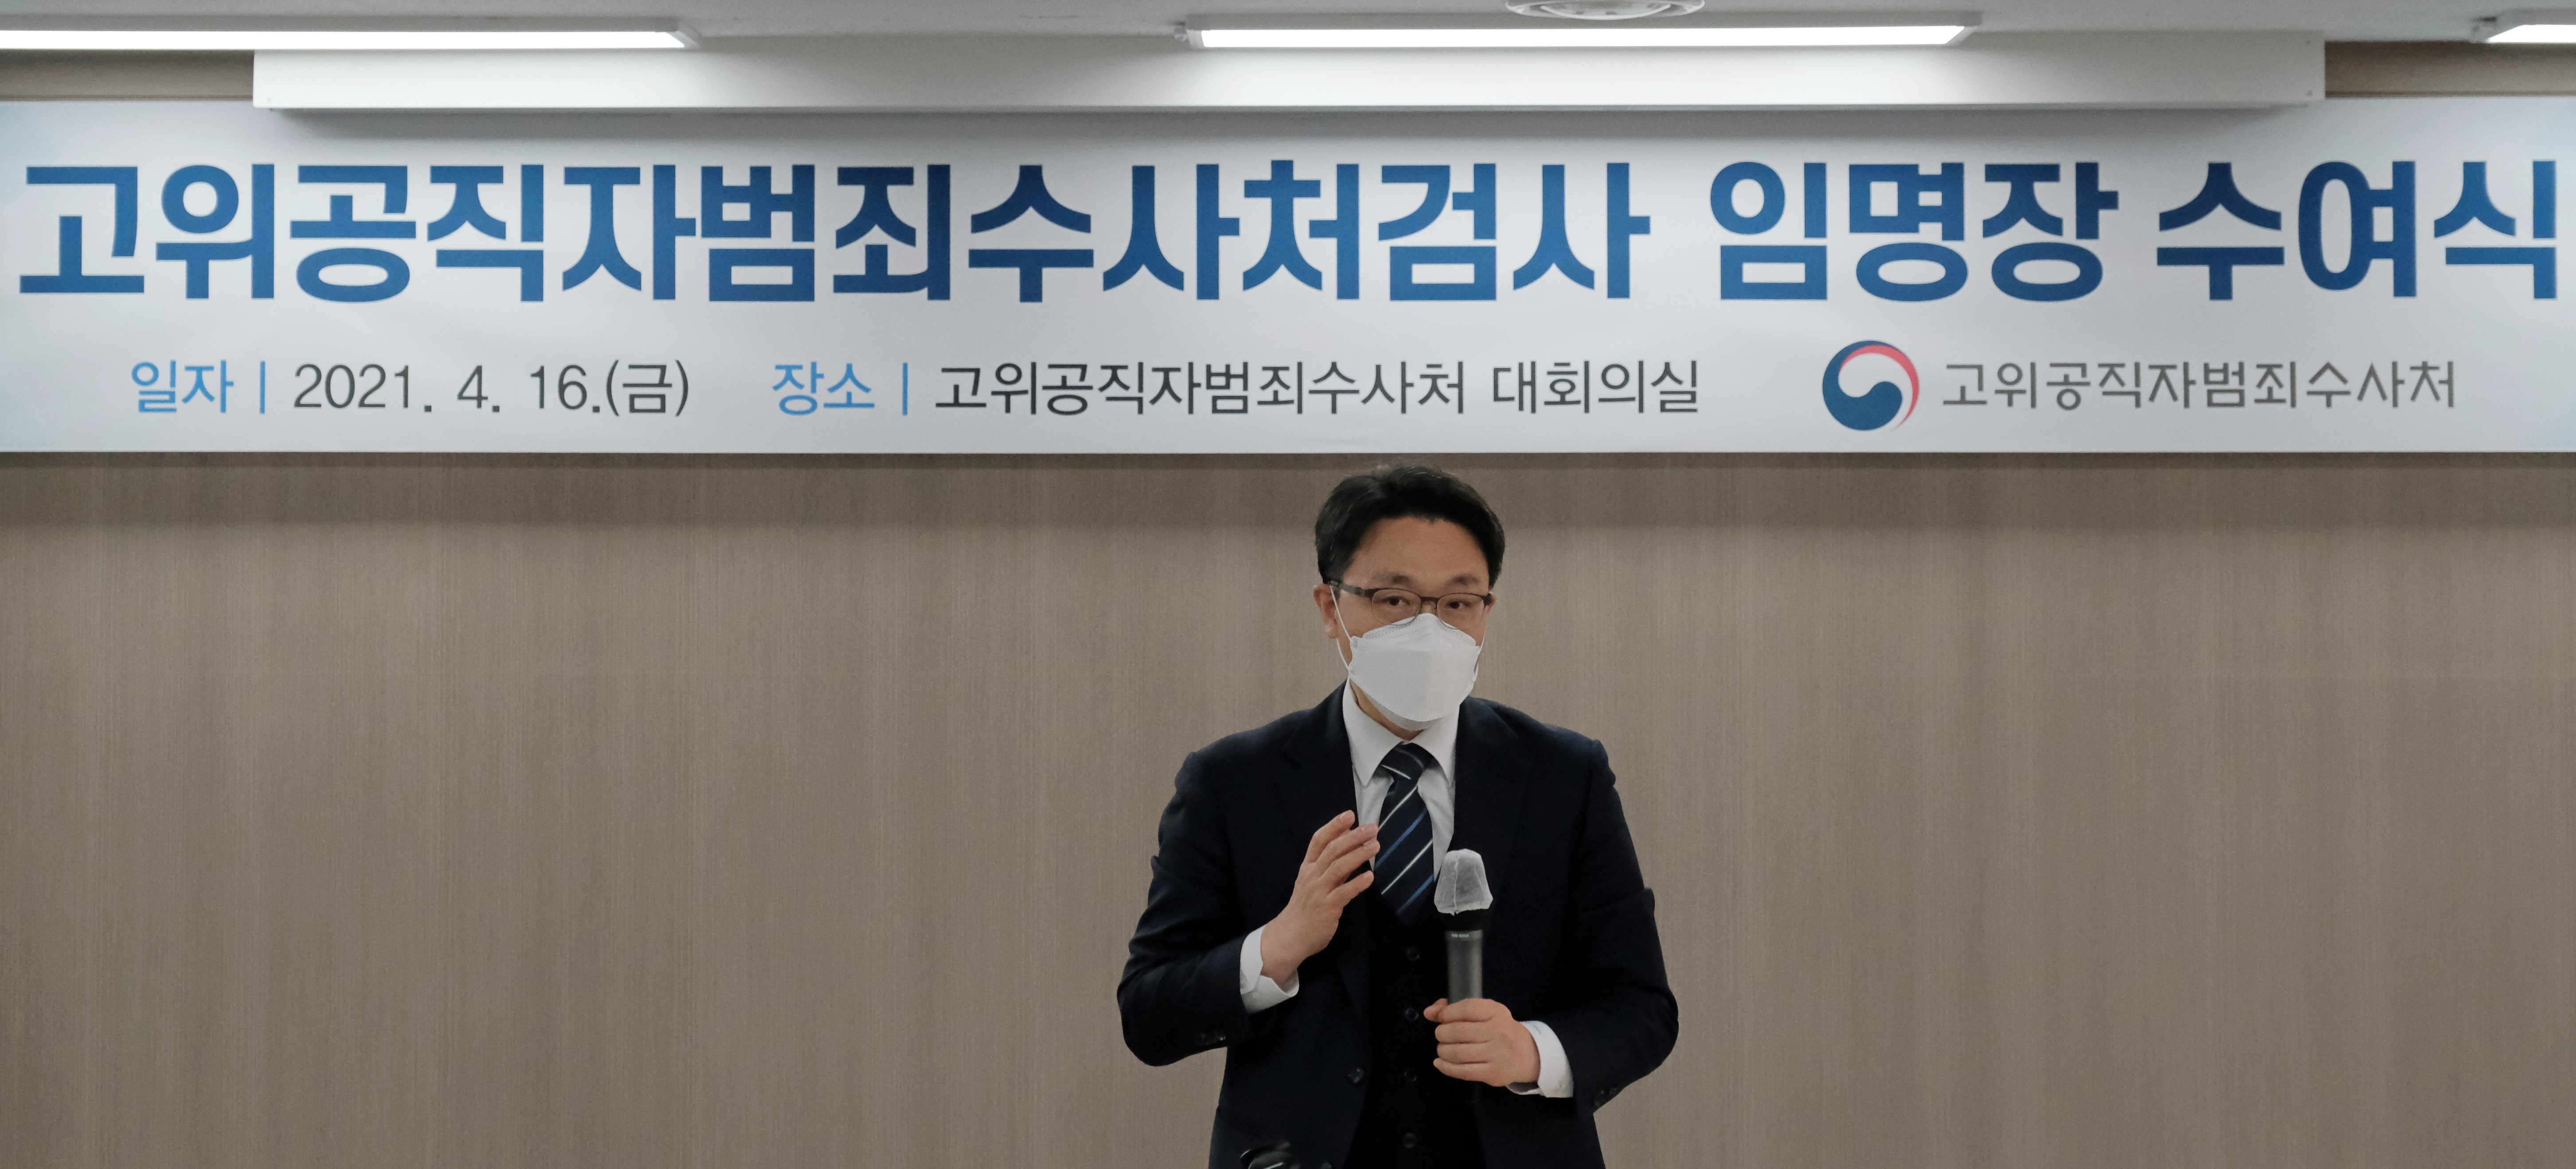 고위공직자범죄수사처검사 임명장 수여식 중 연설 중인 모습